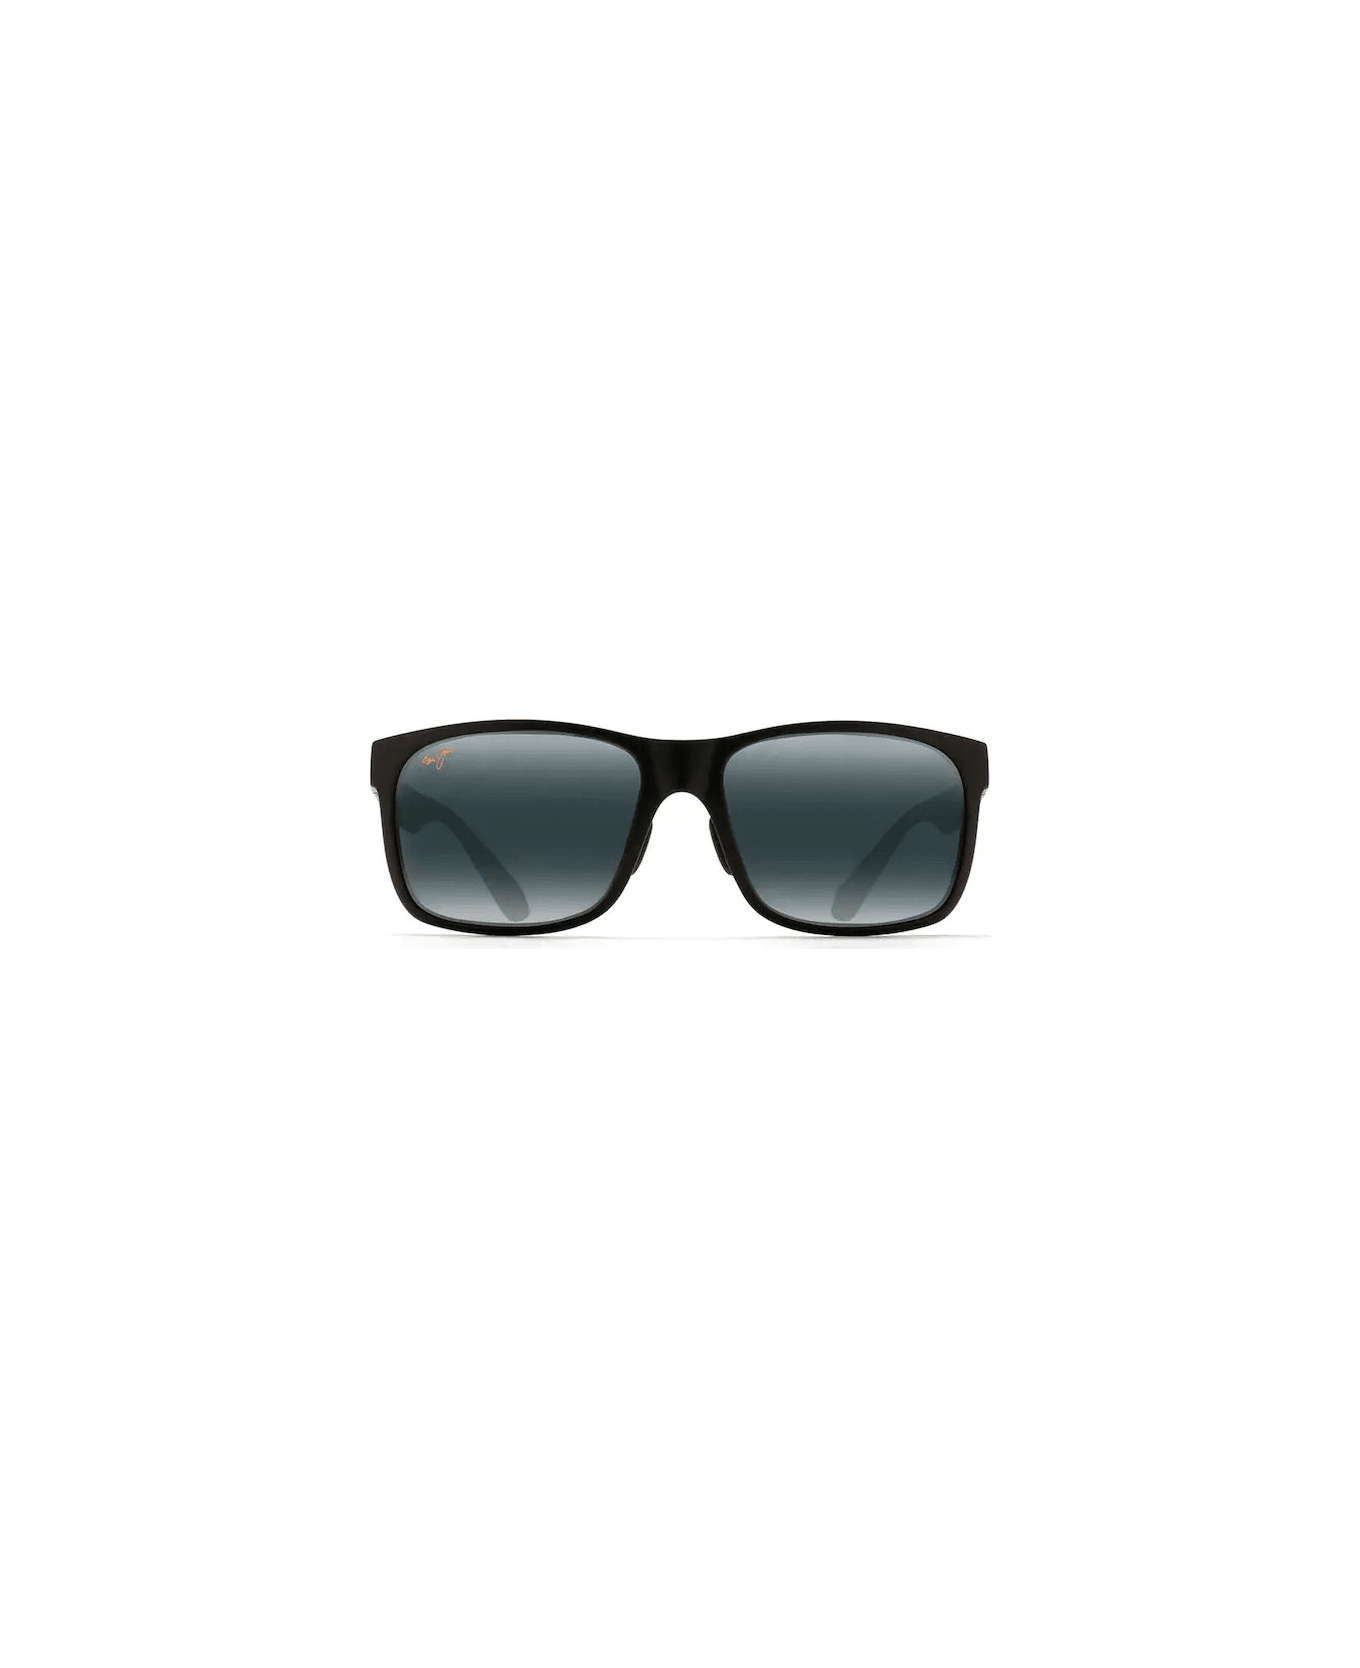 Maui Jim Red Sands 432-2M Sunglasses - Nero lente grigia サングラス